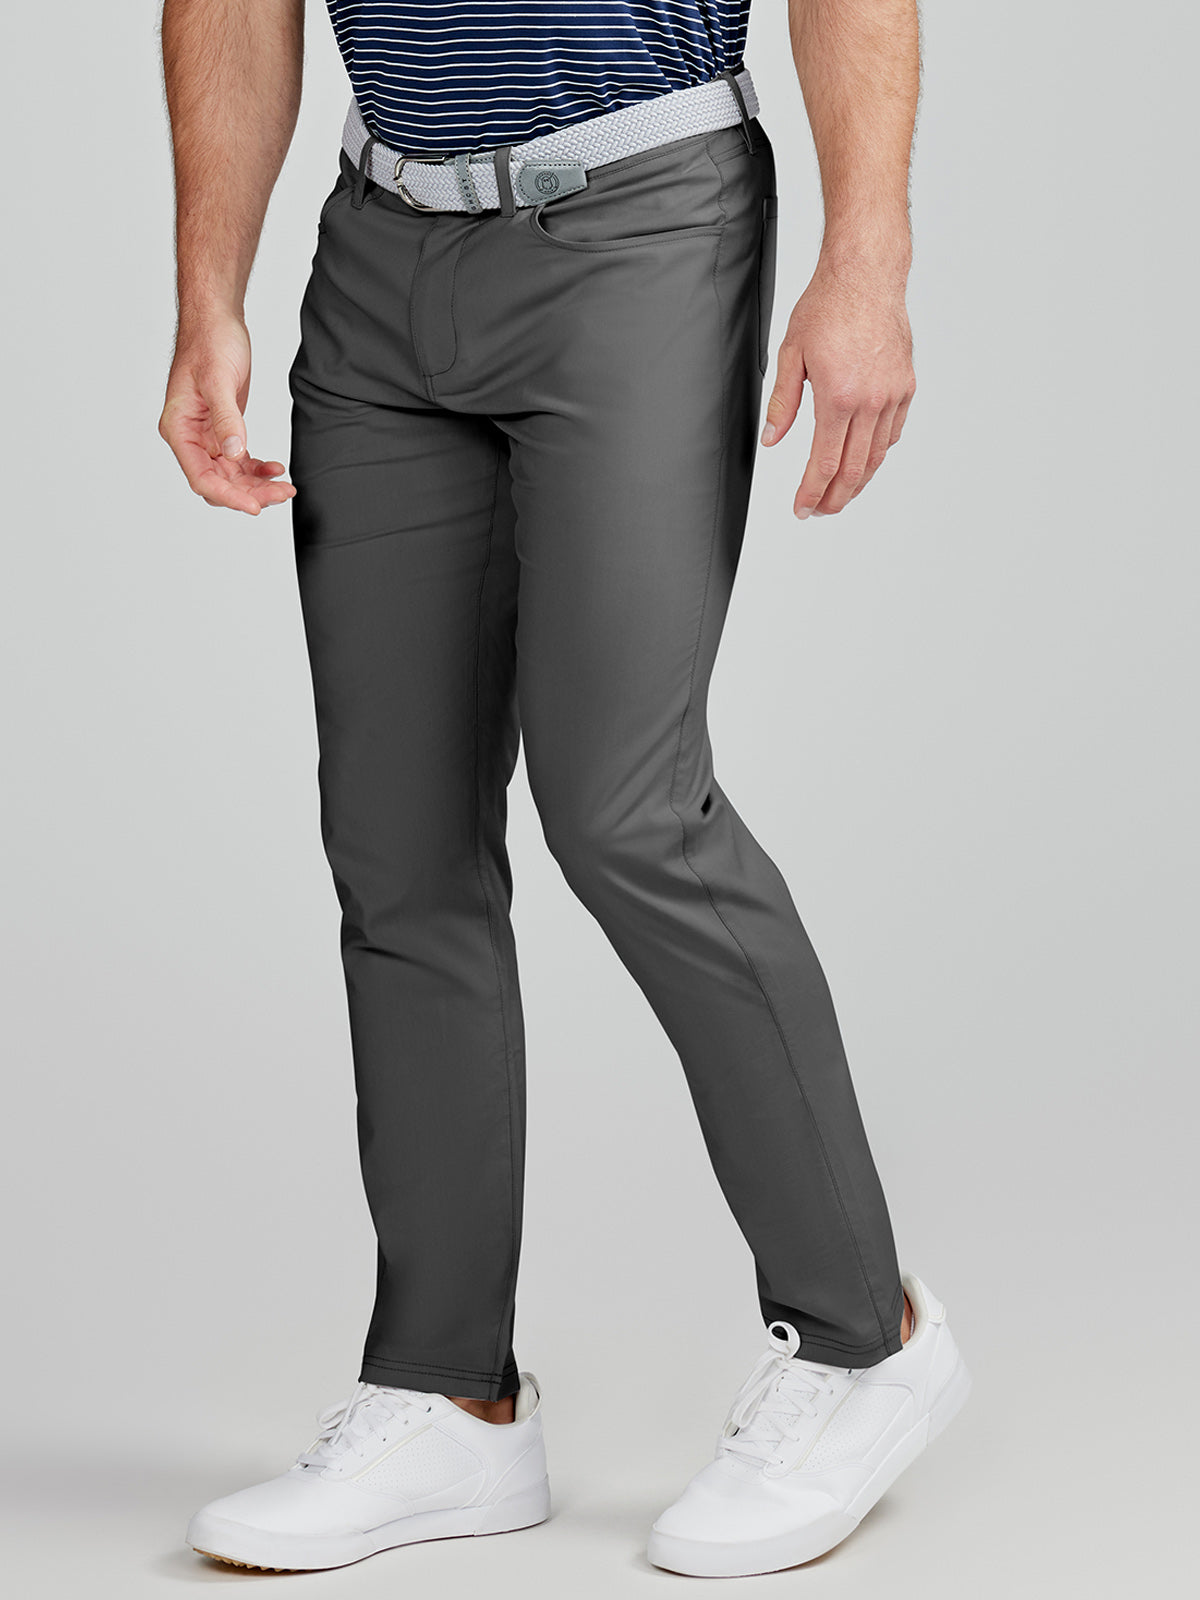 Essentials Men's Standard Classic-Fit Stretch Golf Pant